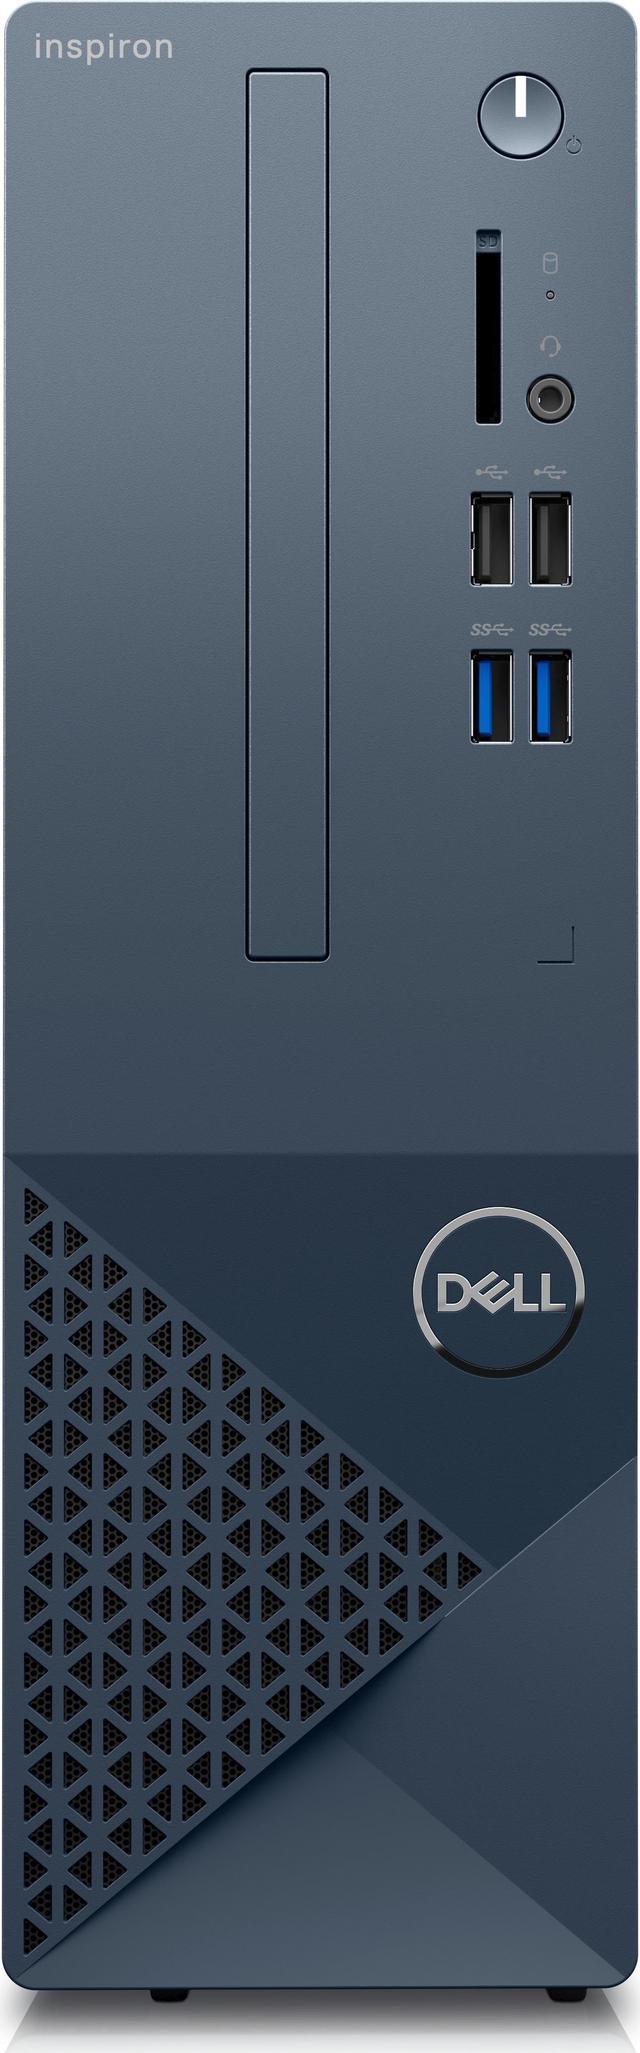 Dell デスクトップパソコン Inspiron 3470 メモリ増設済 美品 ...